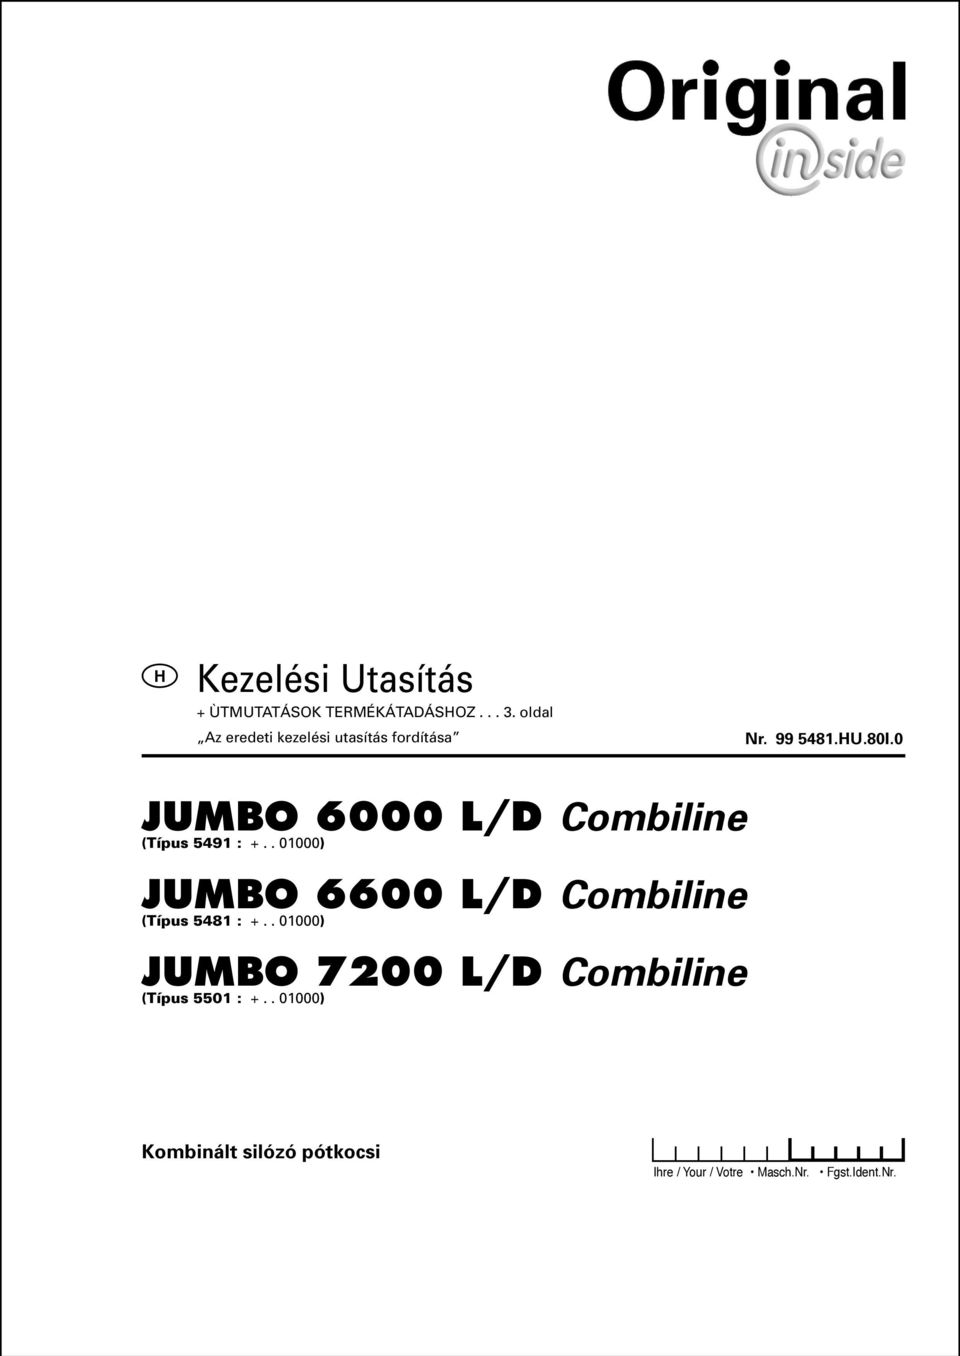 . 01000) JUMBO 7200 L/D Combiline (Típus 5501 : +.